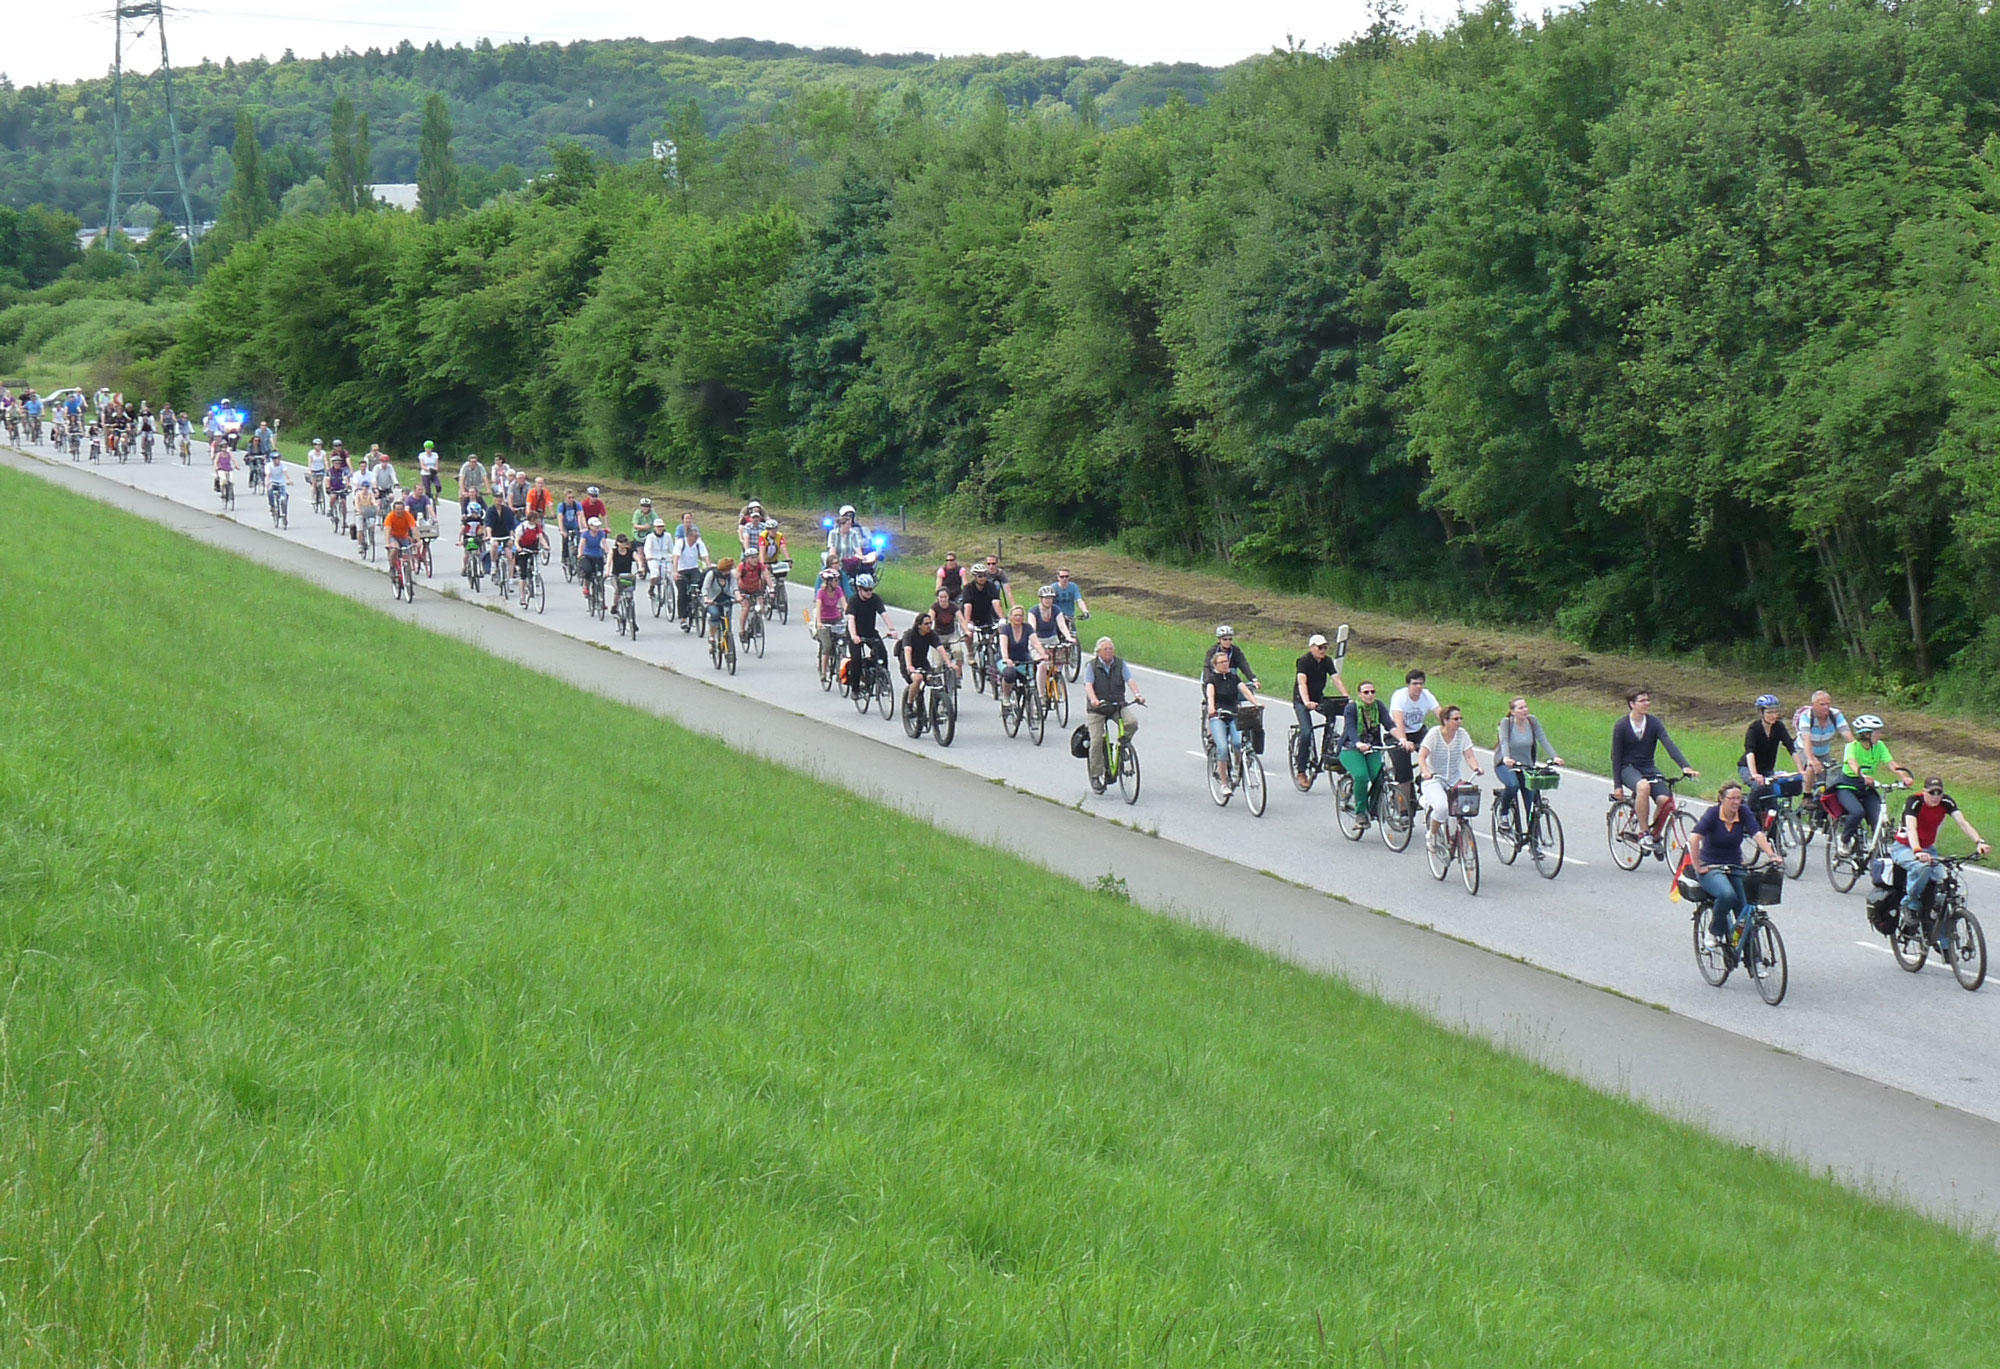 www.fahrradsternfahrt.info